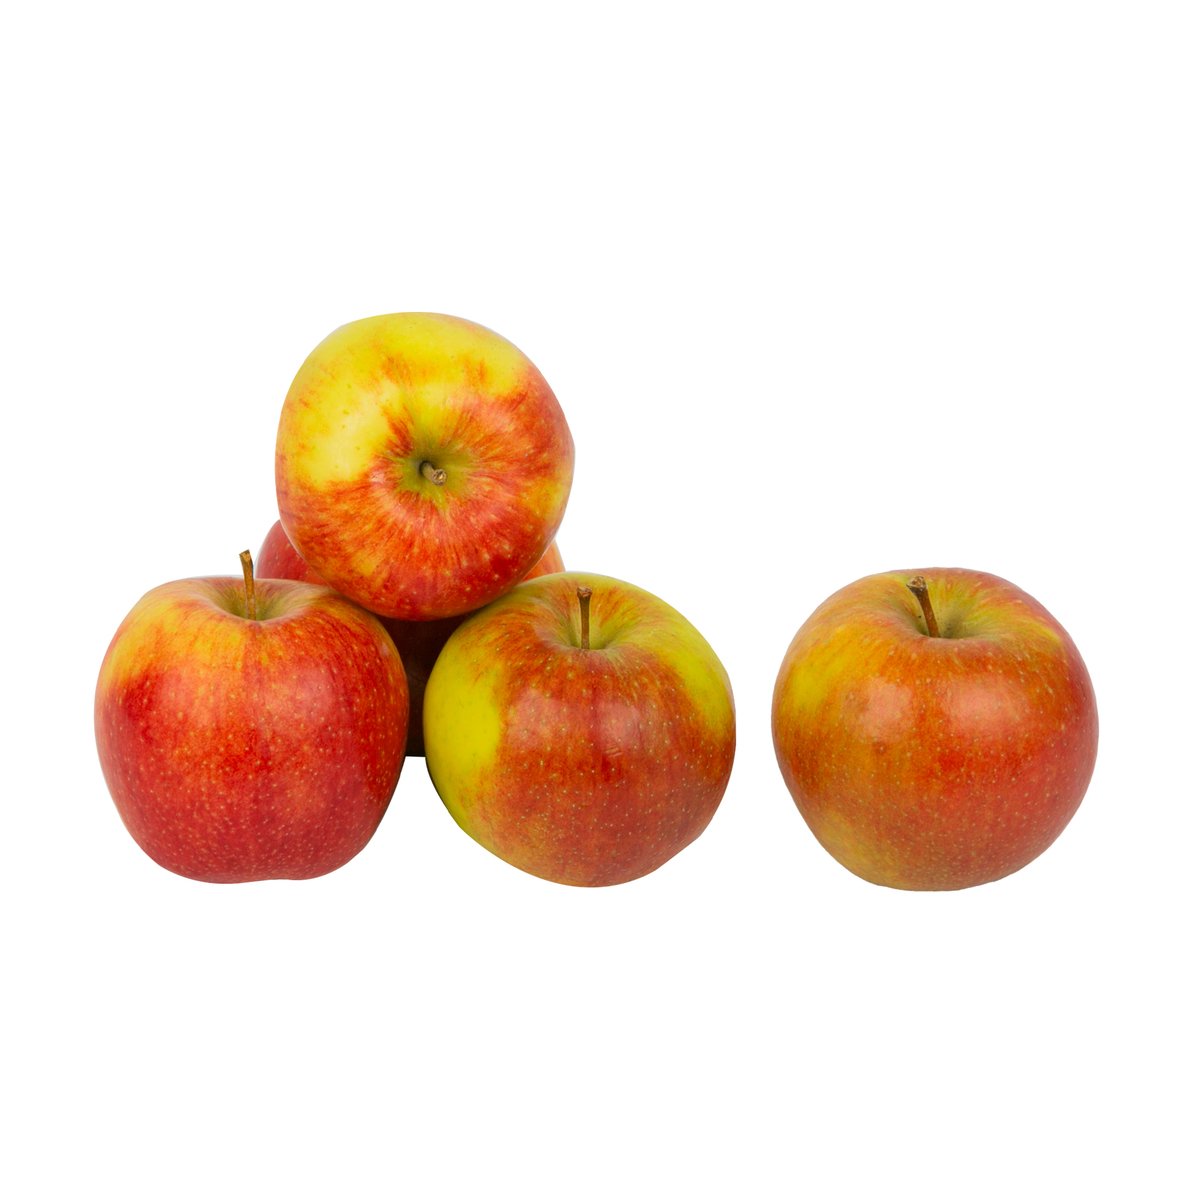 Buy Apple Fraulein Germany 1 kg Online at Best Price | Apples | Lulu UAE in UAE